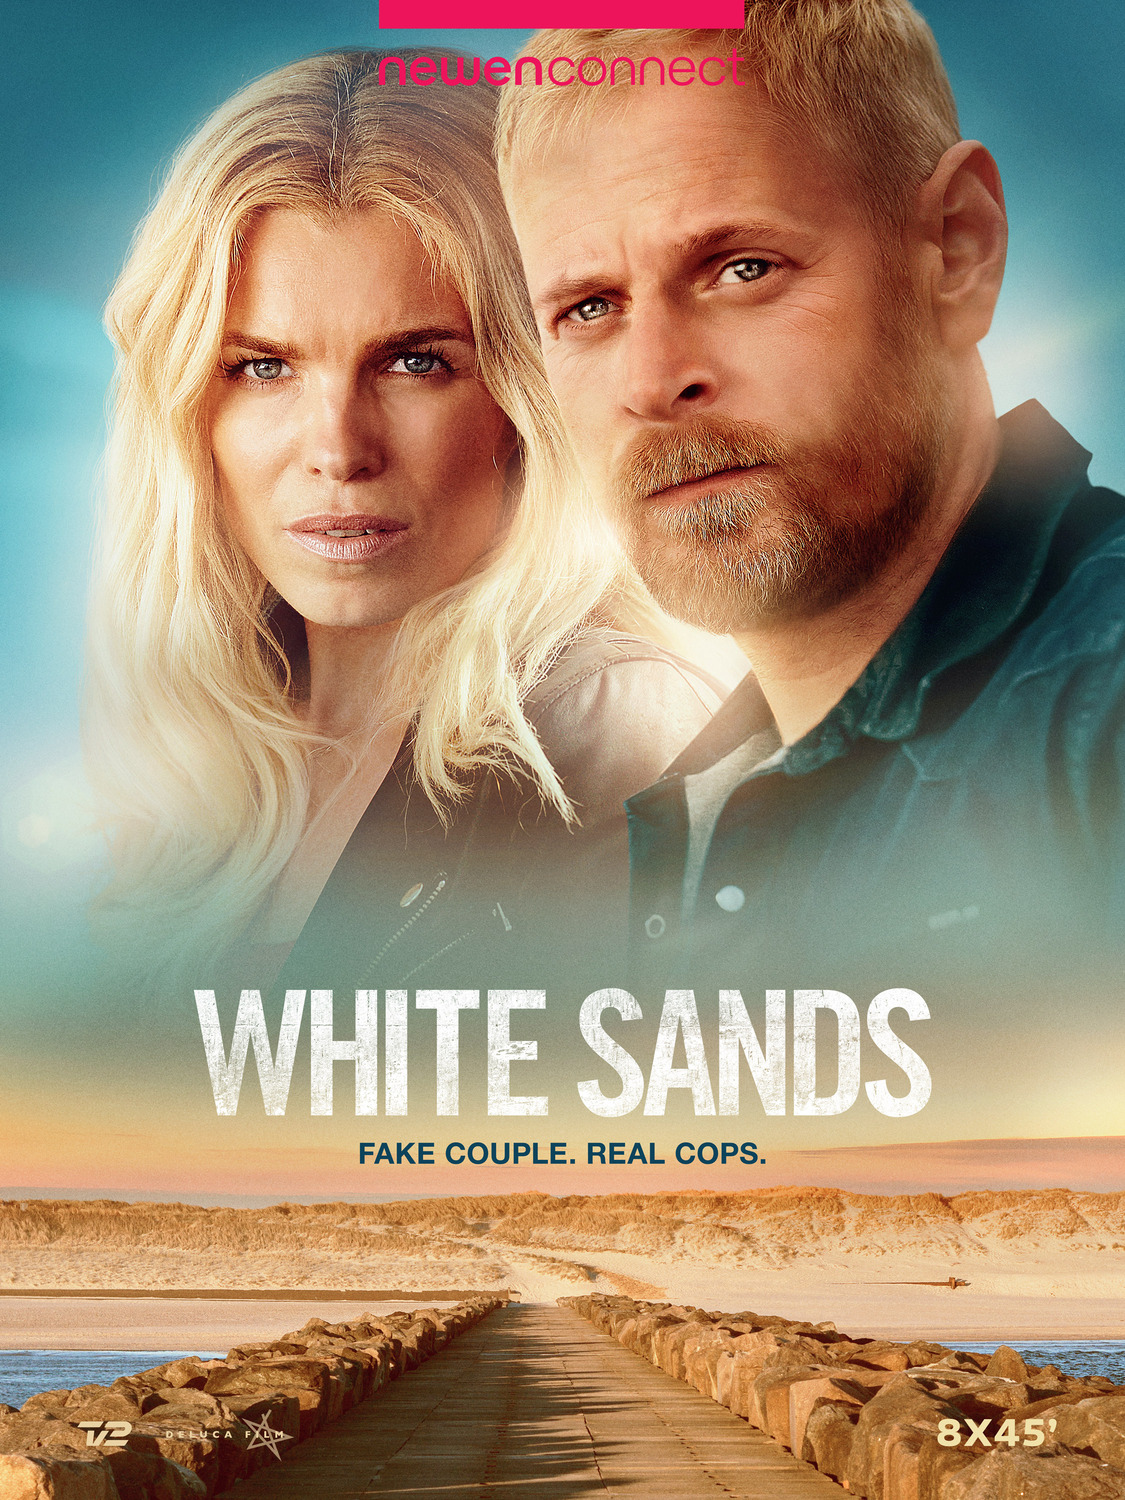 Extra Large TV Poster Image for Hvide Sande 